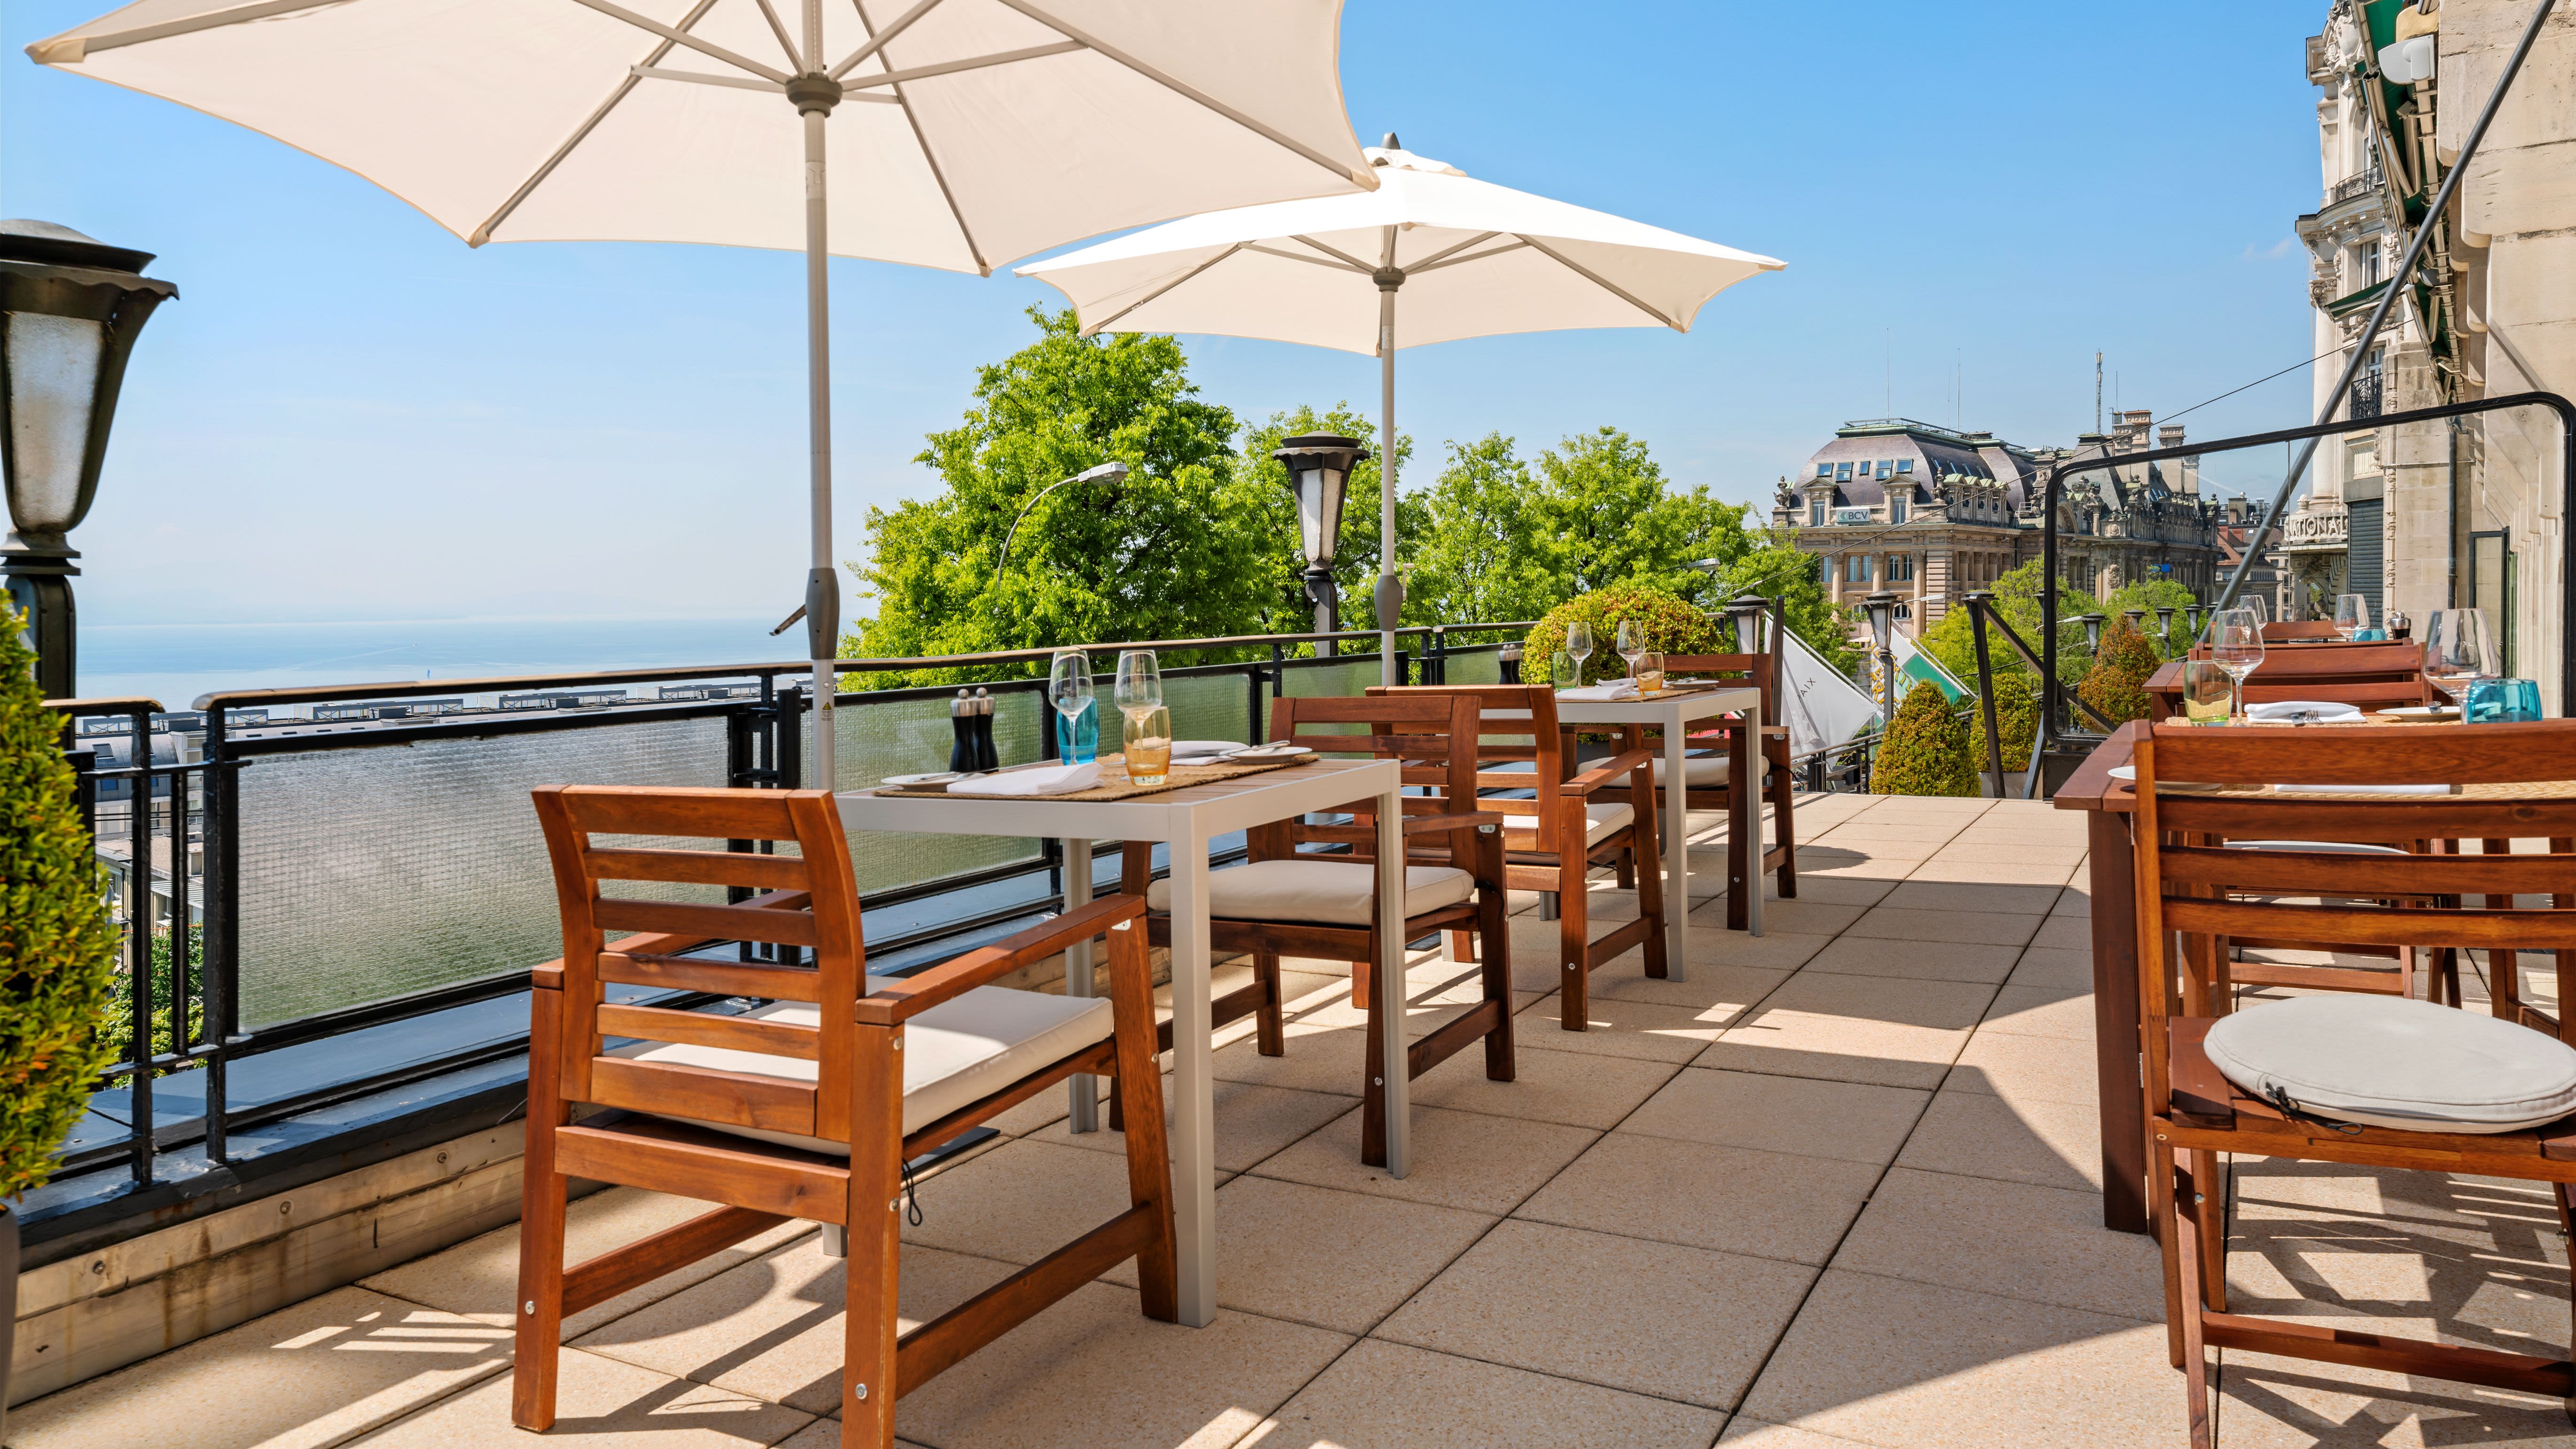 La Terrasse de la Paix - 1st floor Restaurant & Lounge Bar, Lausanne